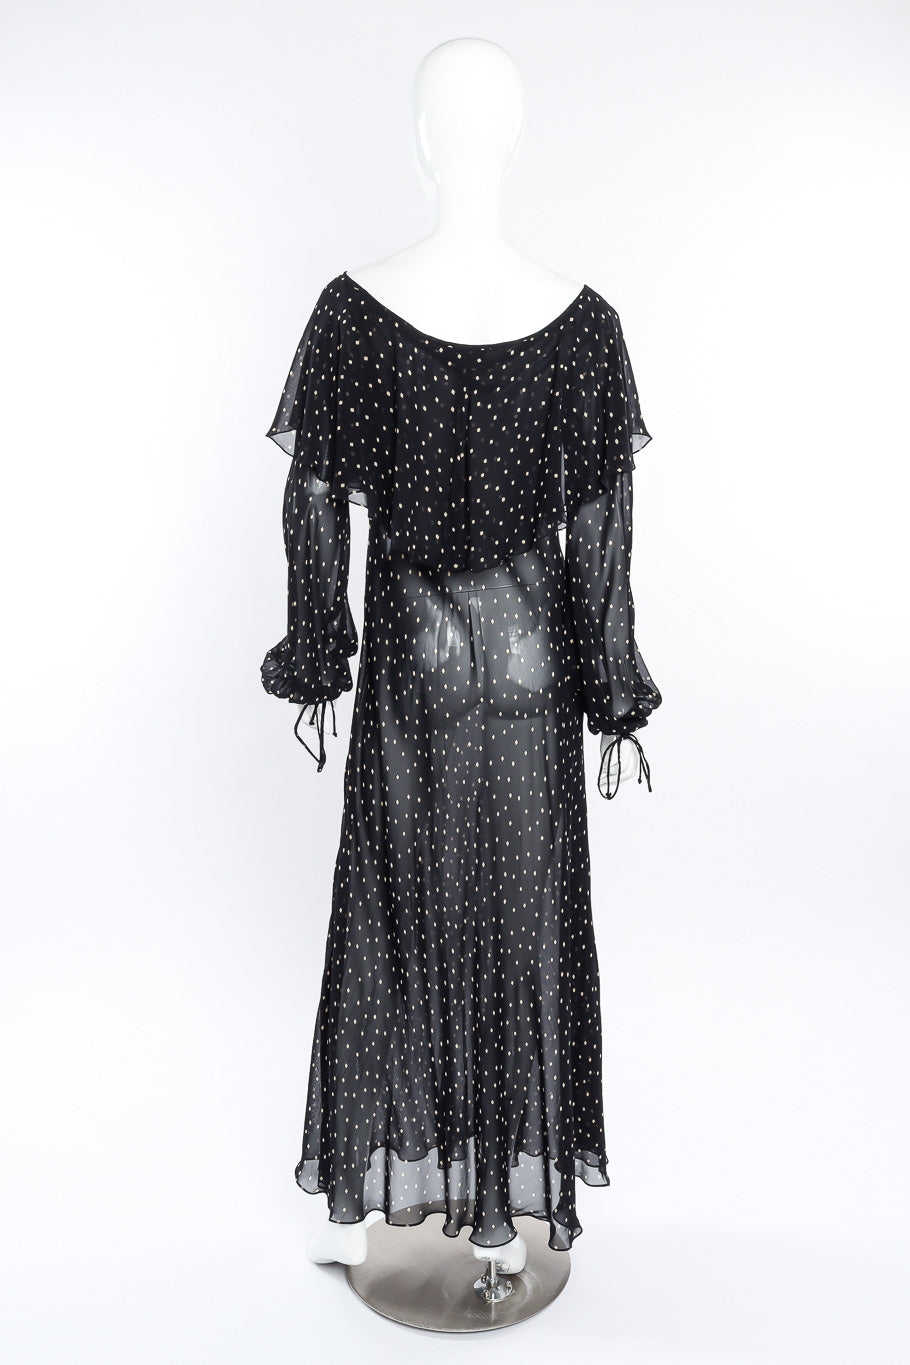 Donna Karan Diamond Dot Ruffle Dress back view on mannequin @Recessla